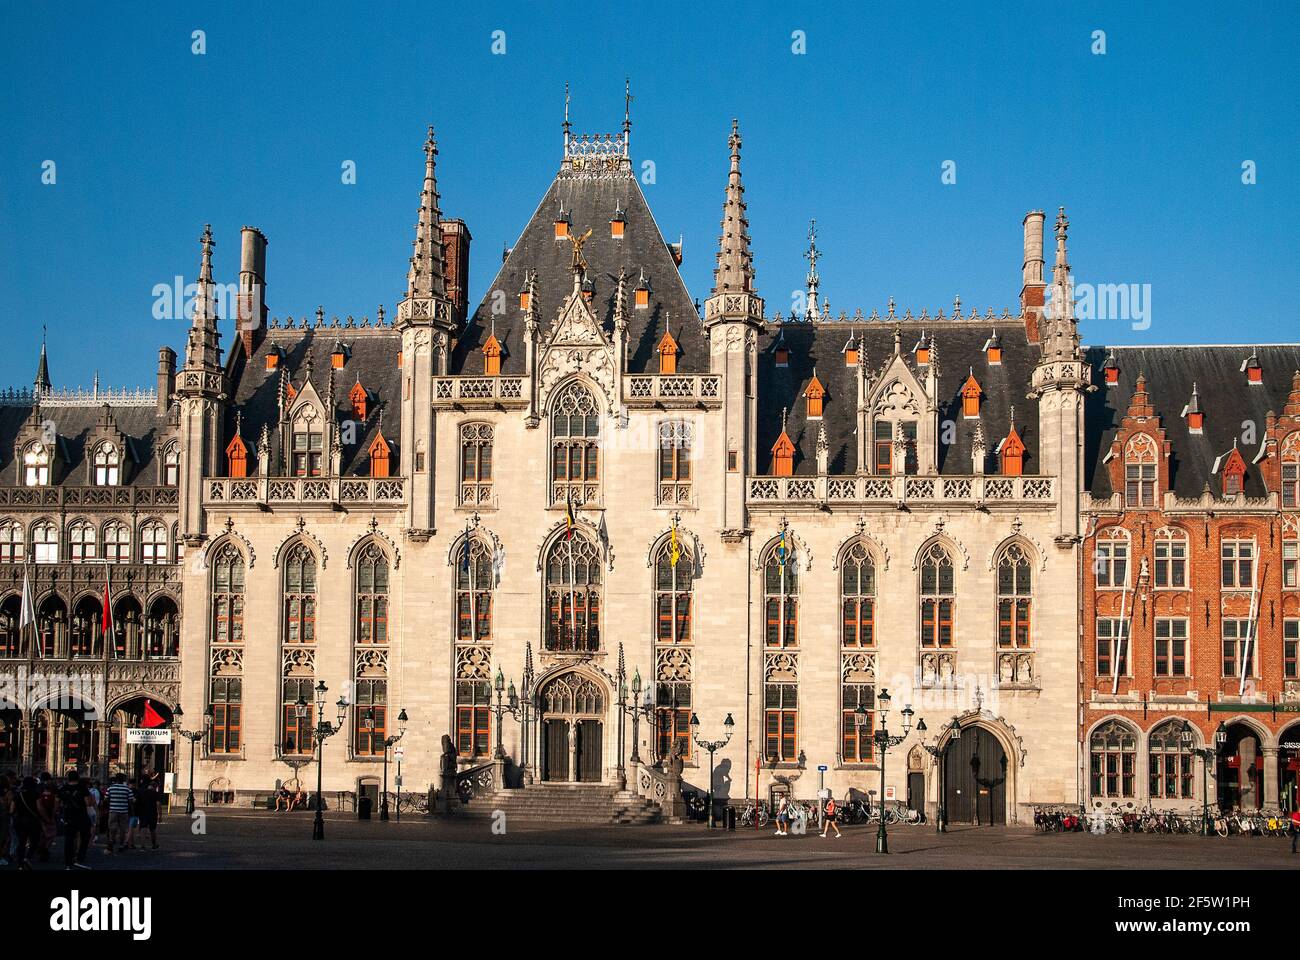 Provinciaal Hof à Bruges Markt (Brugge) Belgique - Flandre Banque D'Images